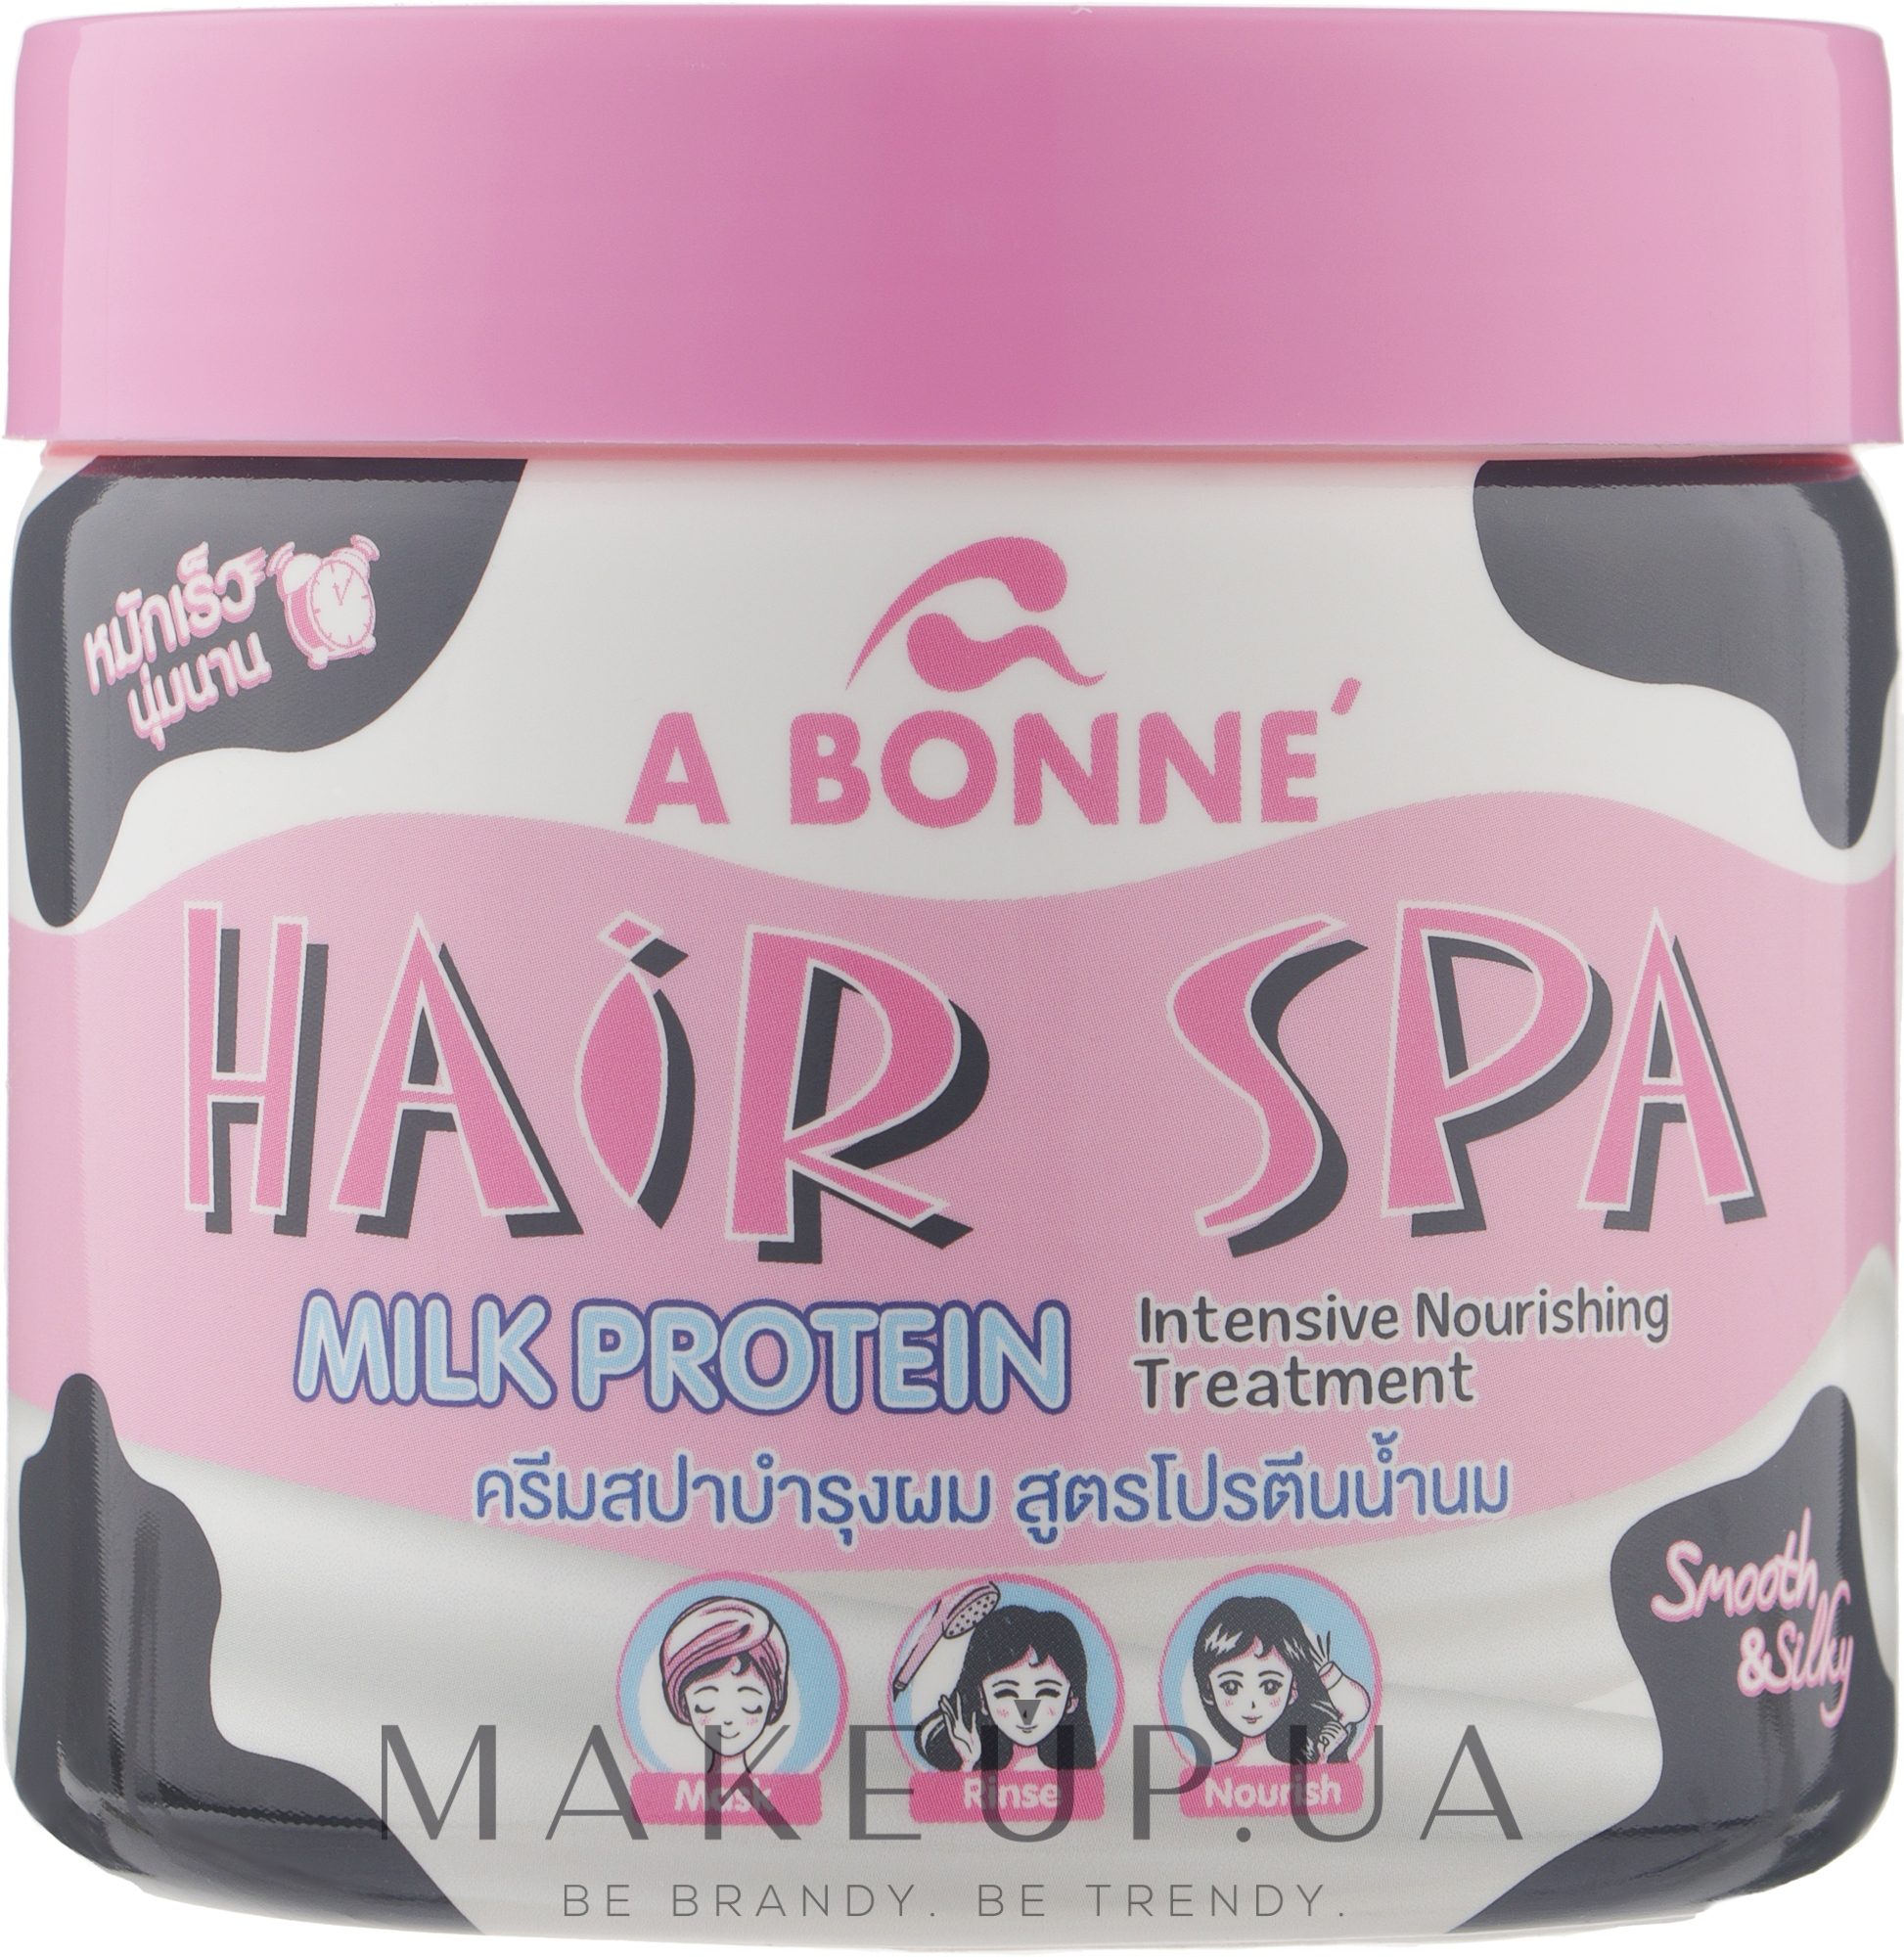 Интенсивный питательный уход за волосами с молочными протеинами - A Bonne Hair Spa Treatment Intensive Milk Protein — фото 500g